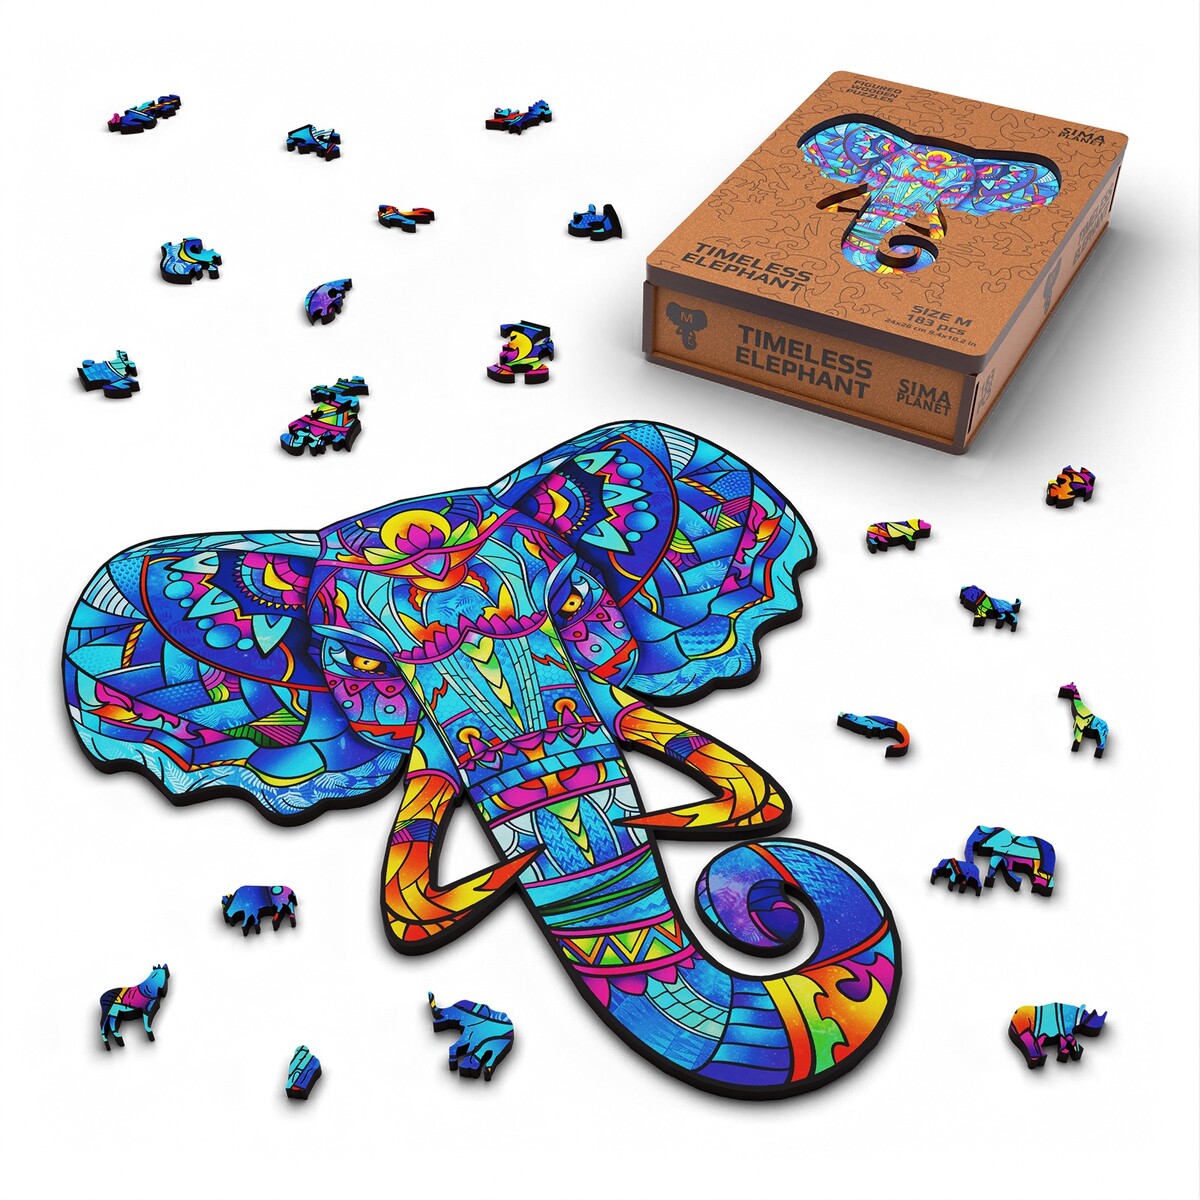 Пазл фигурный деревянный timeless elephant, размер 24х26 см, 183 детали No brand 010075600 - фото 1